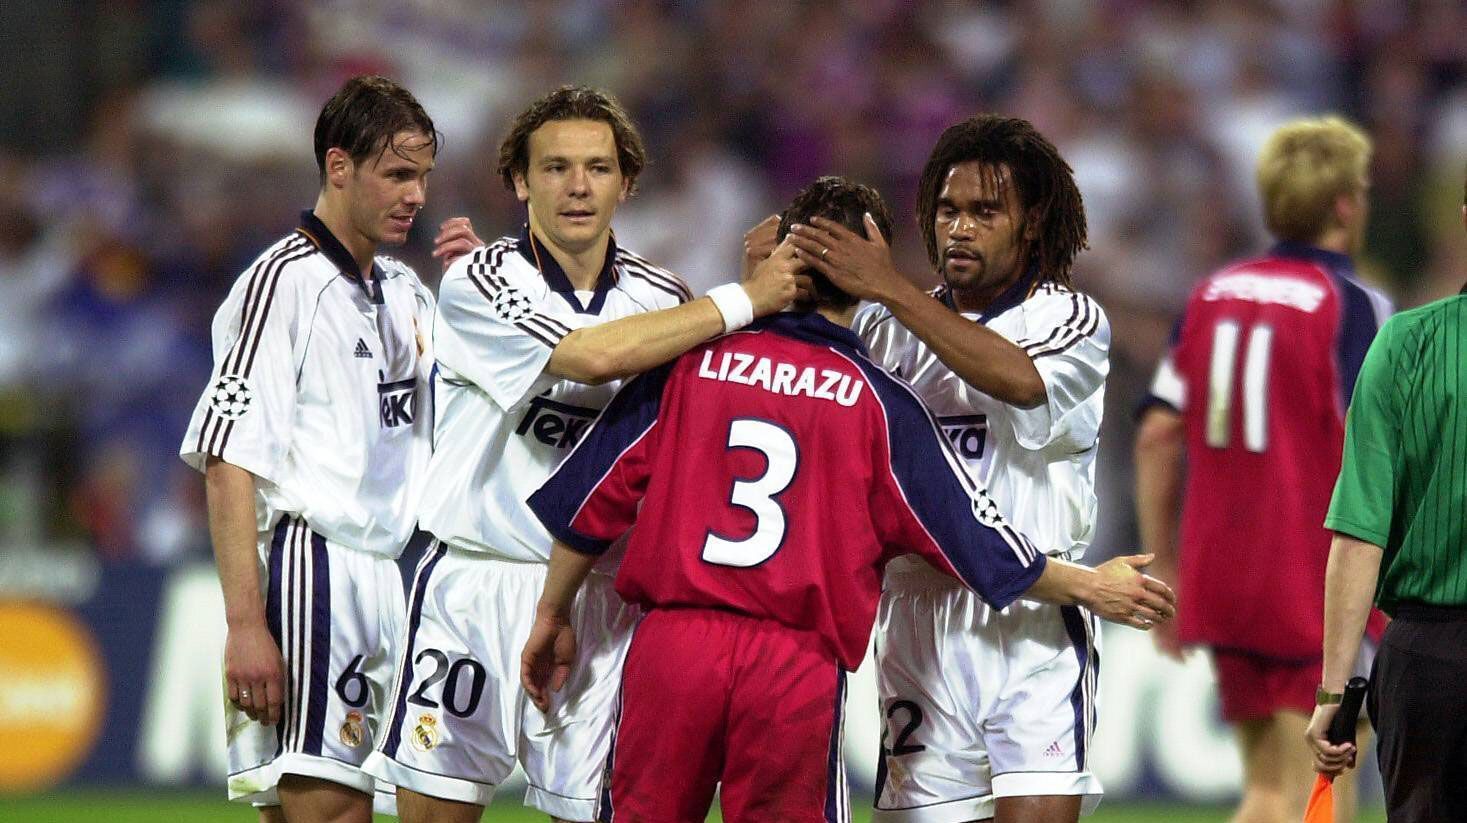 
                <strong>2002 - Viertelfinale</strong><br>
                Doch im alles entscheidenden Duell ist Madrid zur Stelle. Die Enttäuschung ist den Bayern-Spielern förmlich ins Gesicht geschrieben - die "Königlichen" gewinnen mit 2:0 und werden zum zweiten Mal innerhalb von drei Jahren Champions-League-Sieger.
              